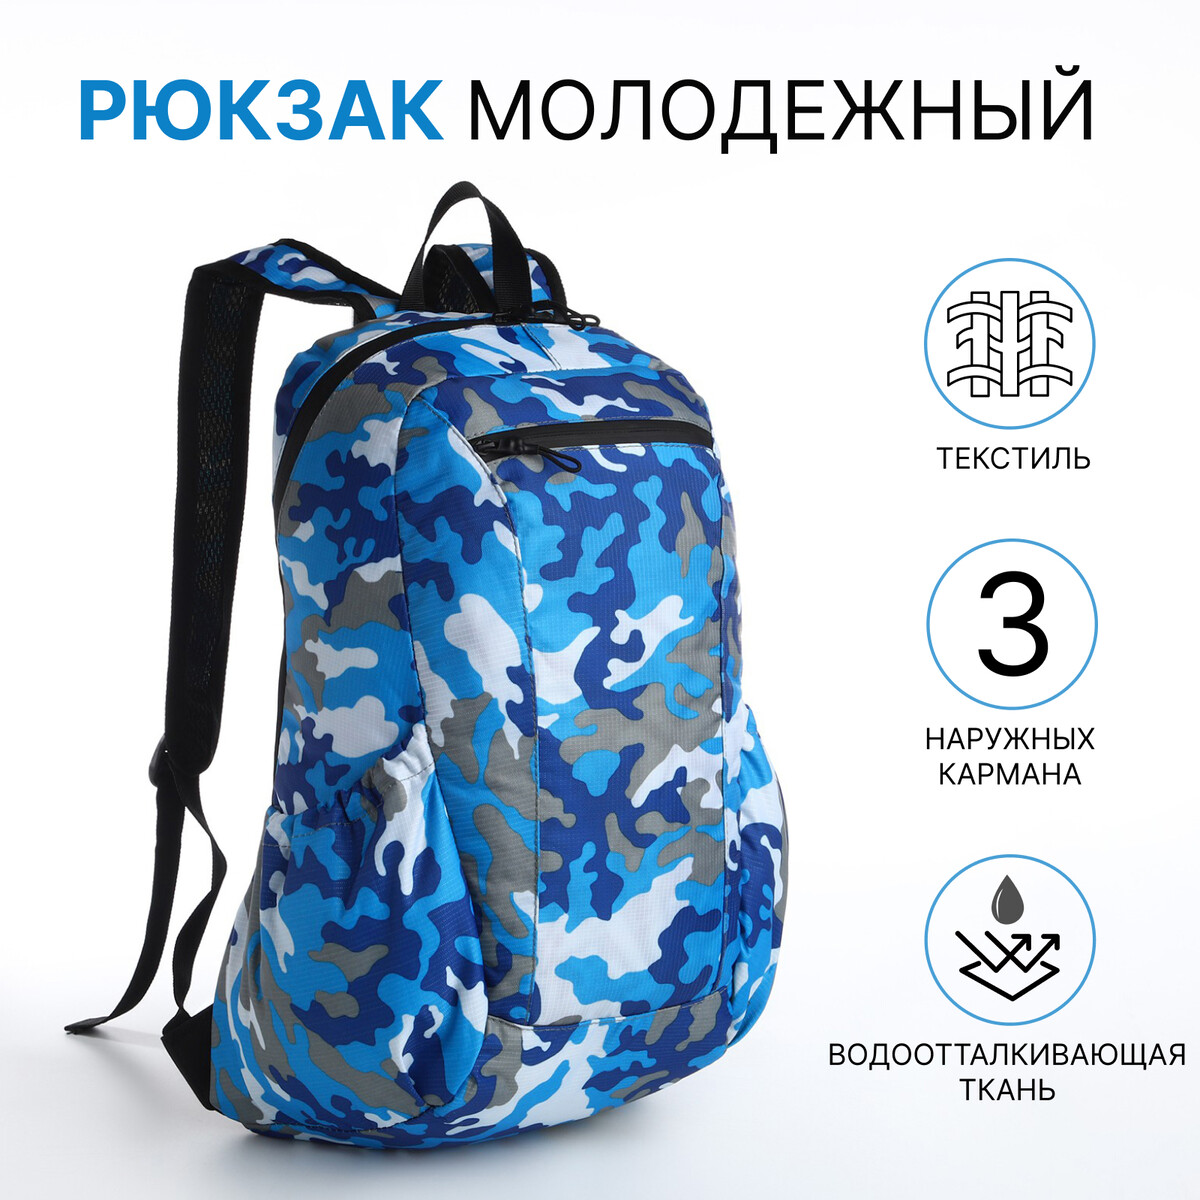 Рюкзак молодежный, водонепроницаемый на молнии, 3 кармана, цвет голубой/синий рюкзак молодежный из текстиля на молнии водонепроницаемый наружный карман синий